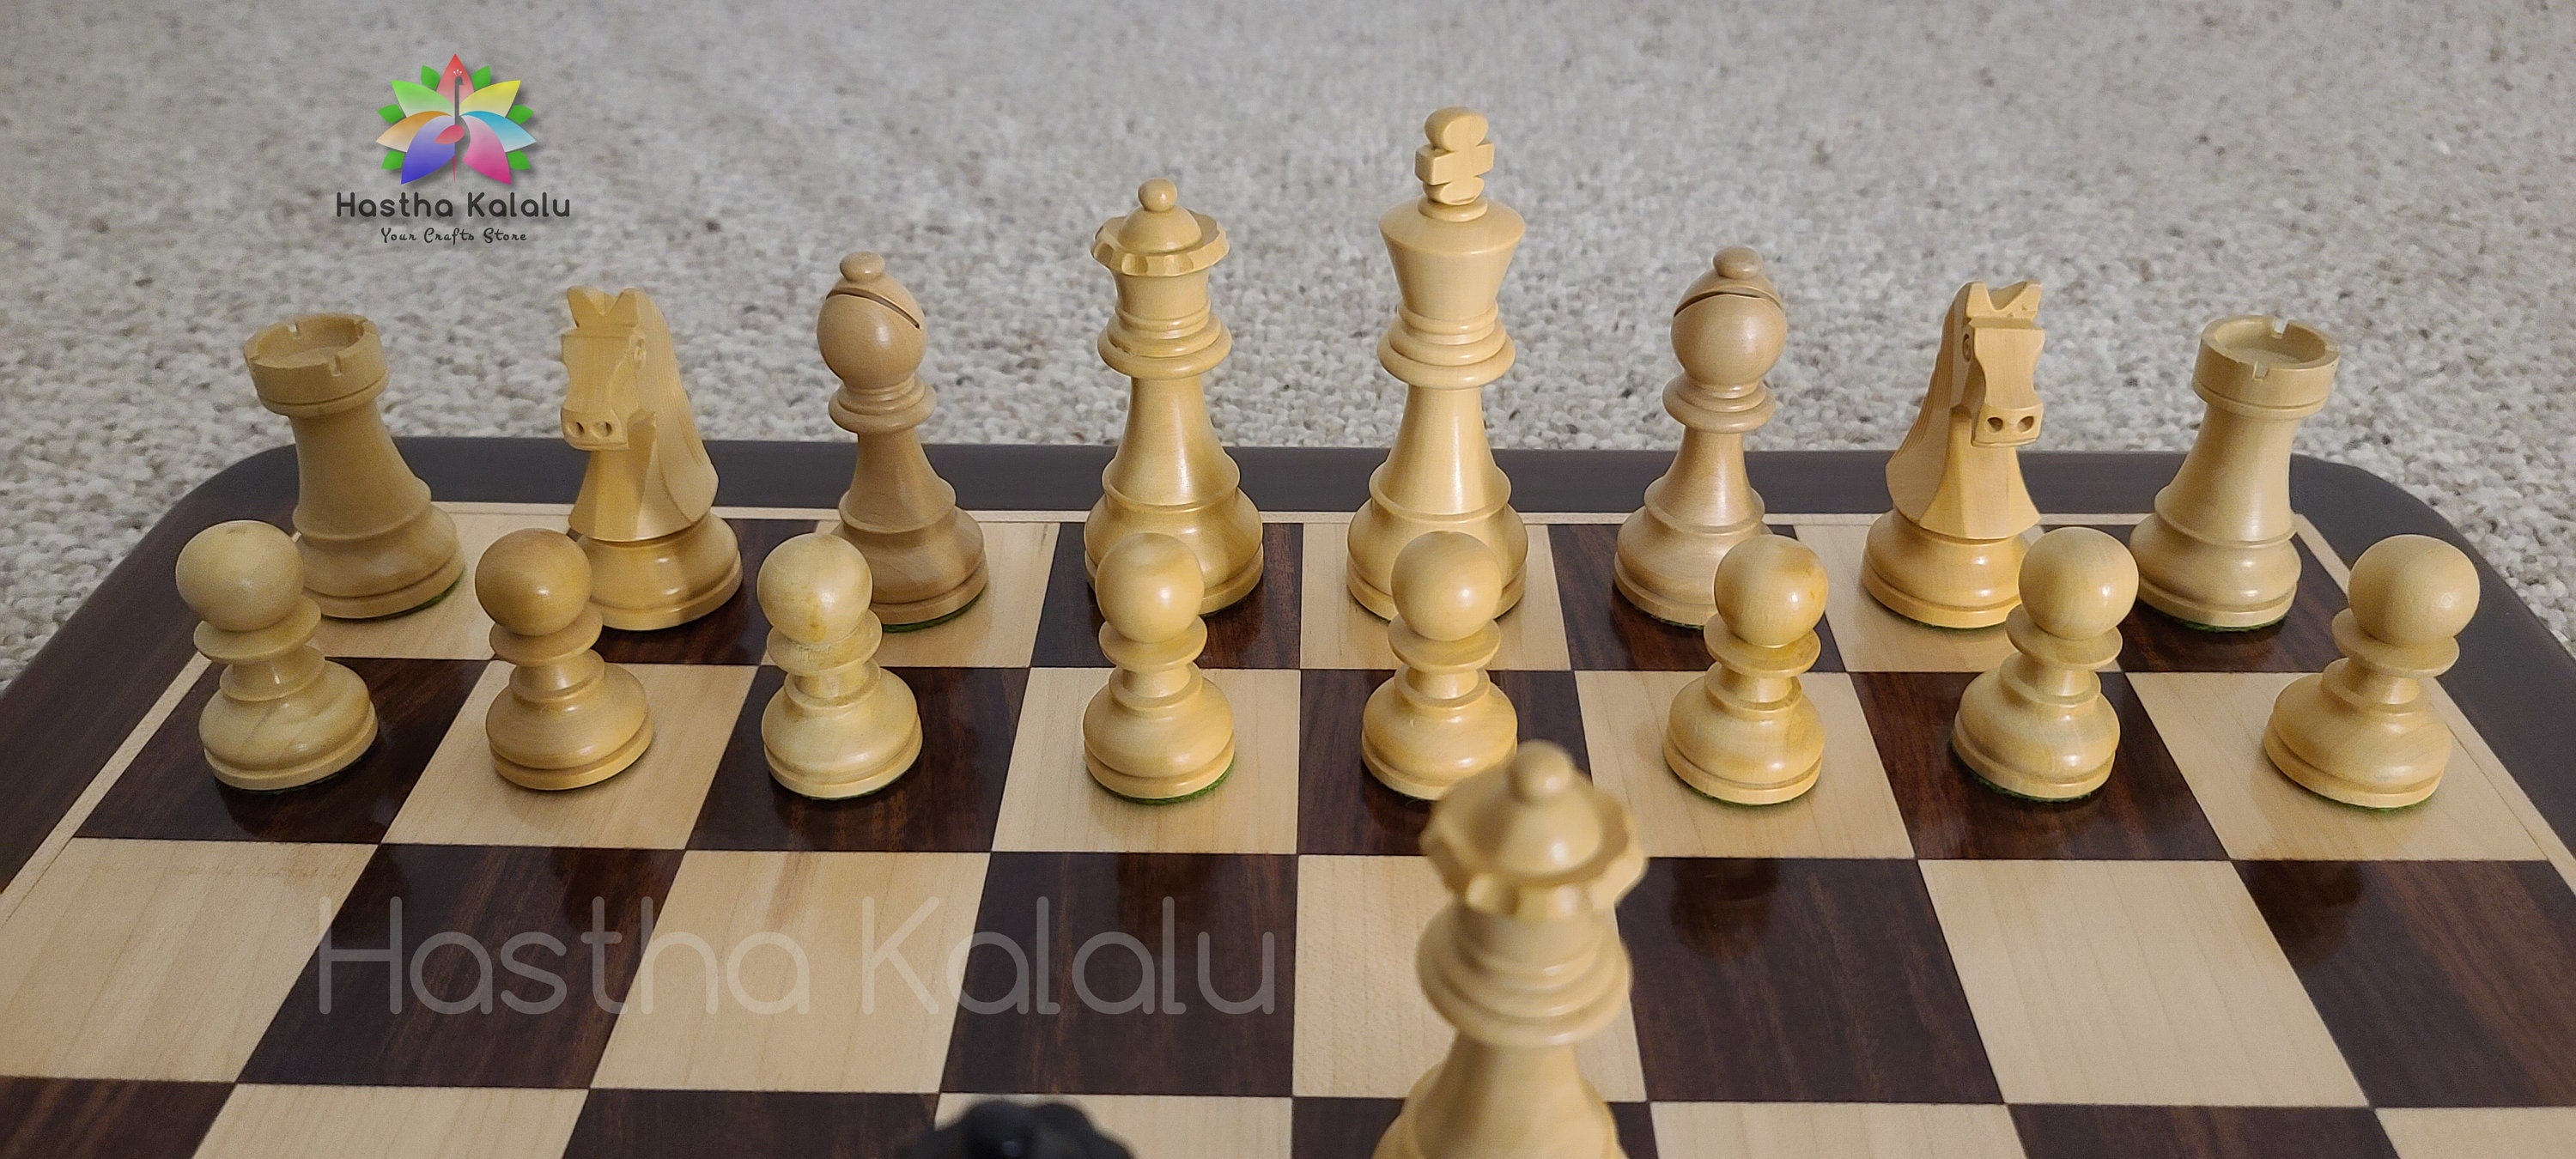 Planche en bois Anjan avec style Staunton ébène, jeu d'échecs en bois lesté chevalier allemand avec roi